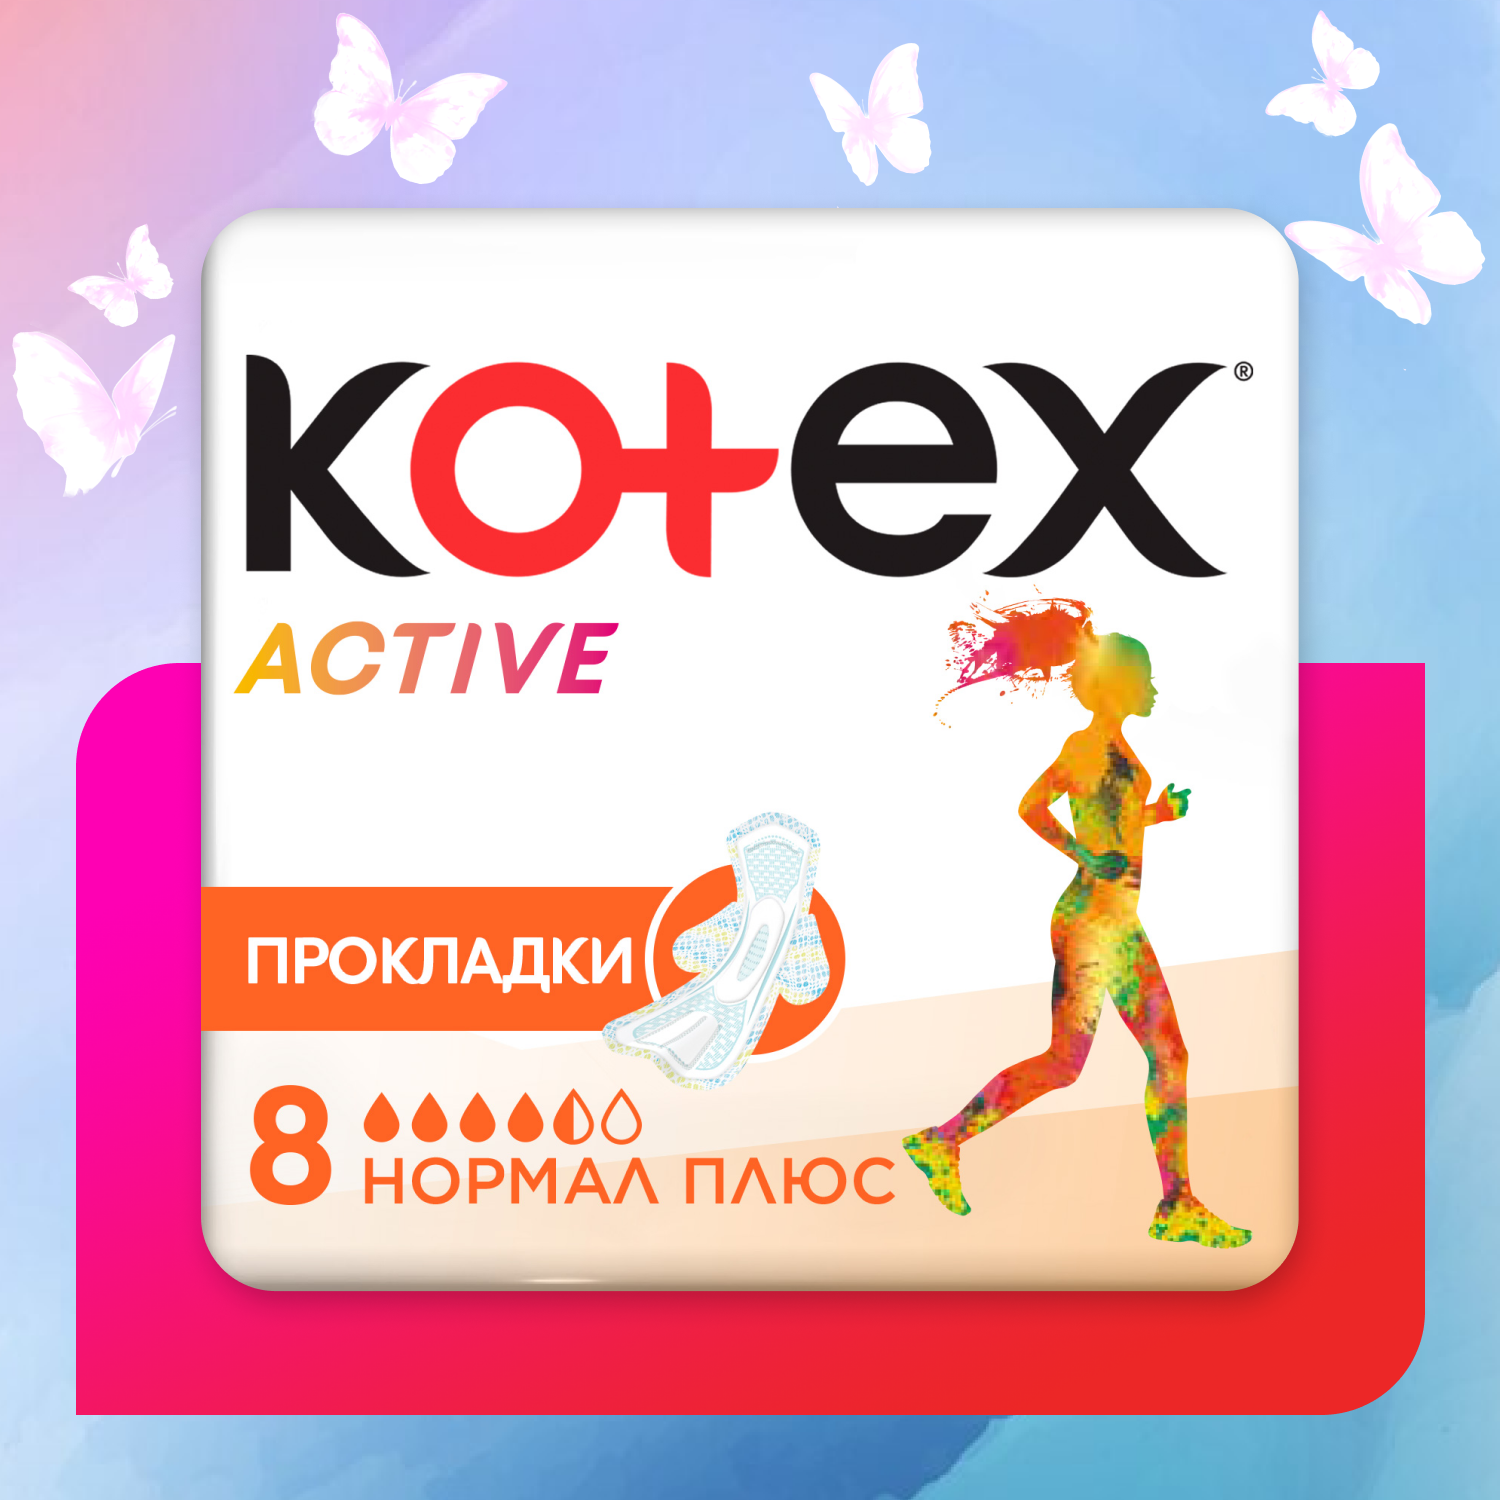 Прокладки KOTEX Эктив нормал плюс 8шт - фото 1